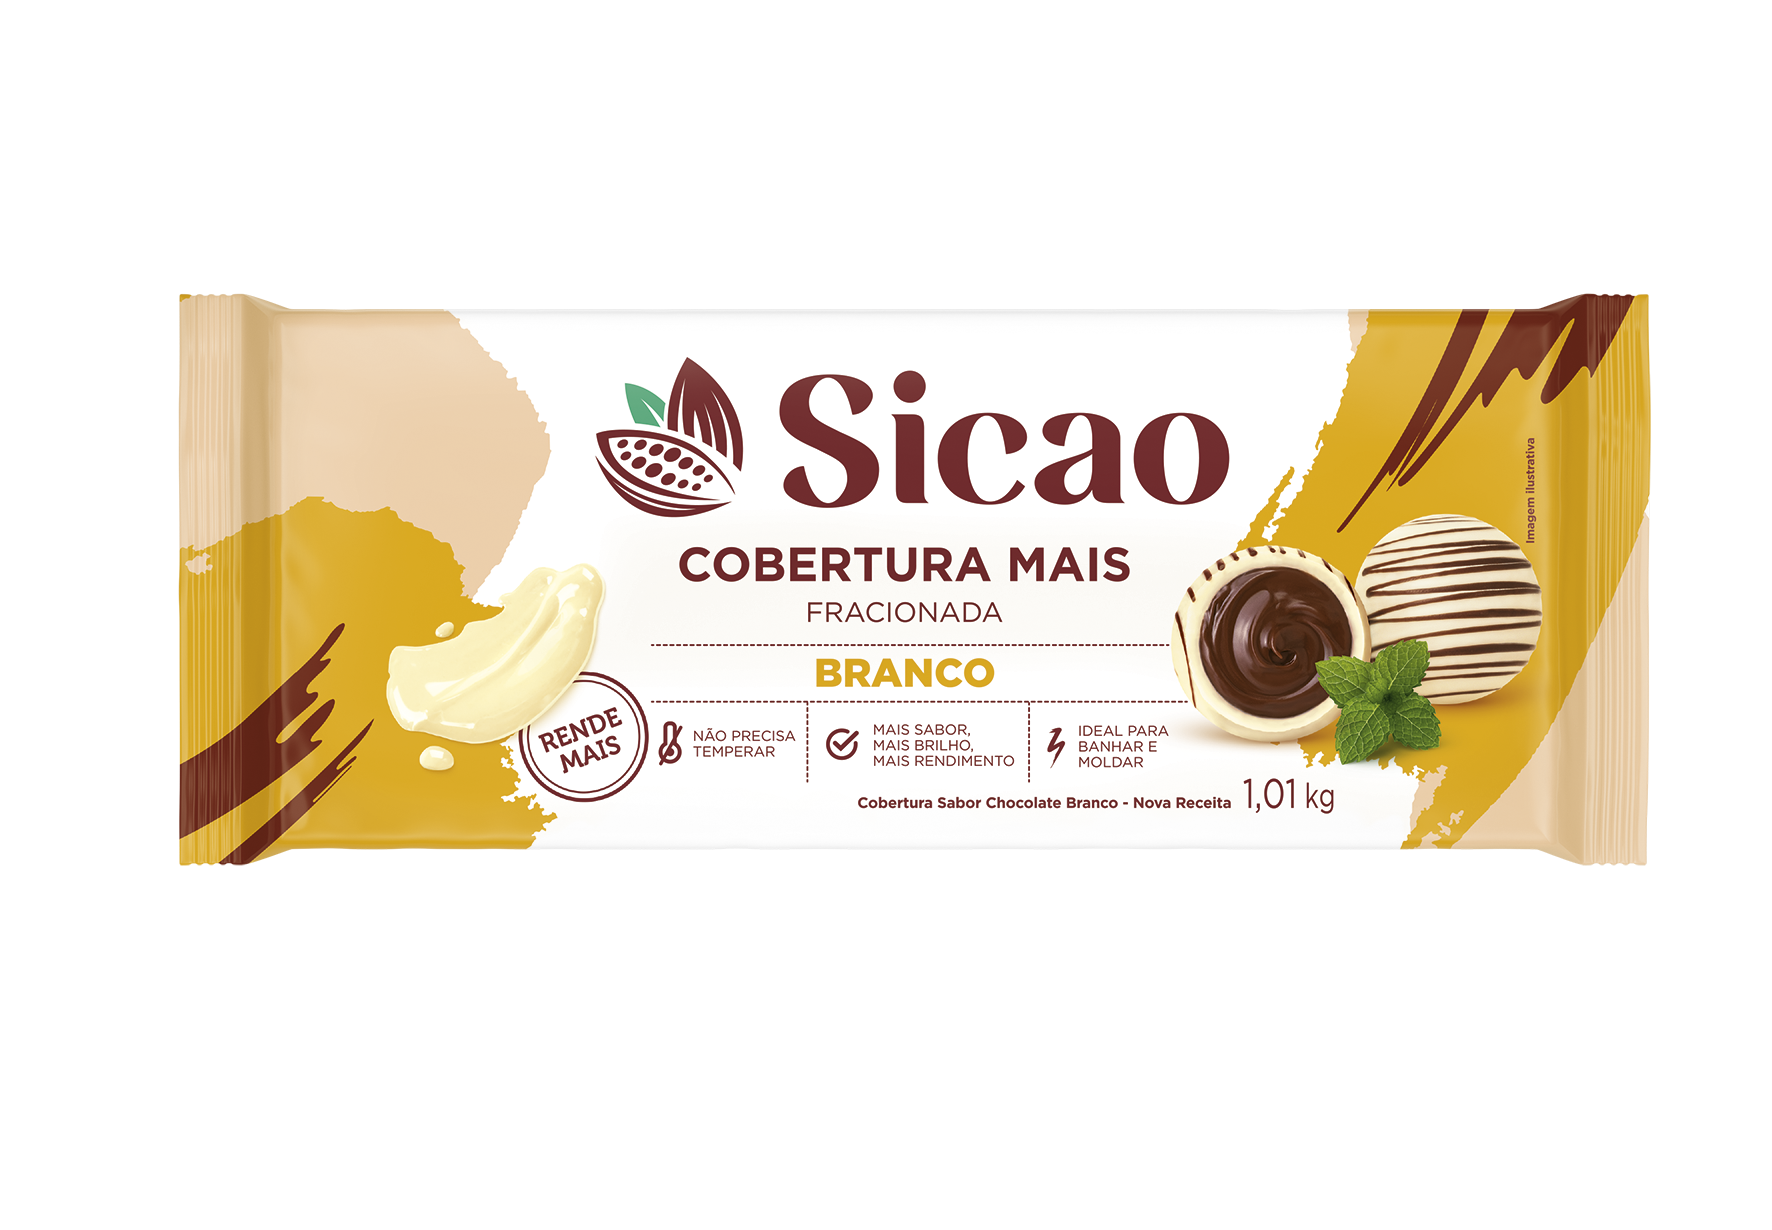 Cobertura Fracionada Sabor Chocolate Branco Sicao Mais - Barra 1,01 kg (1)